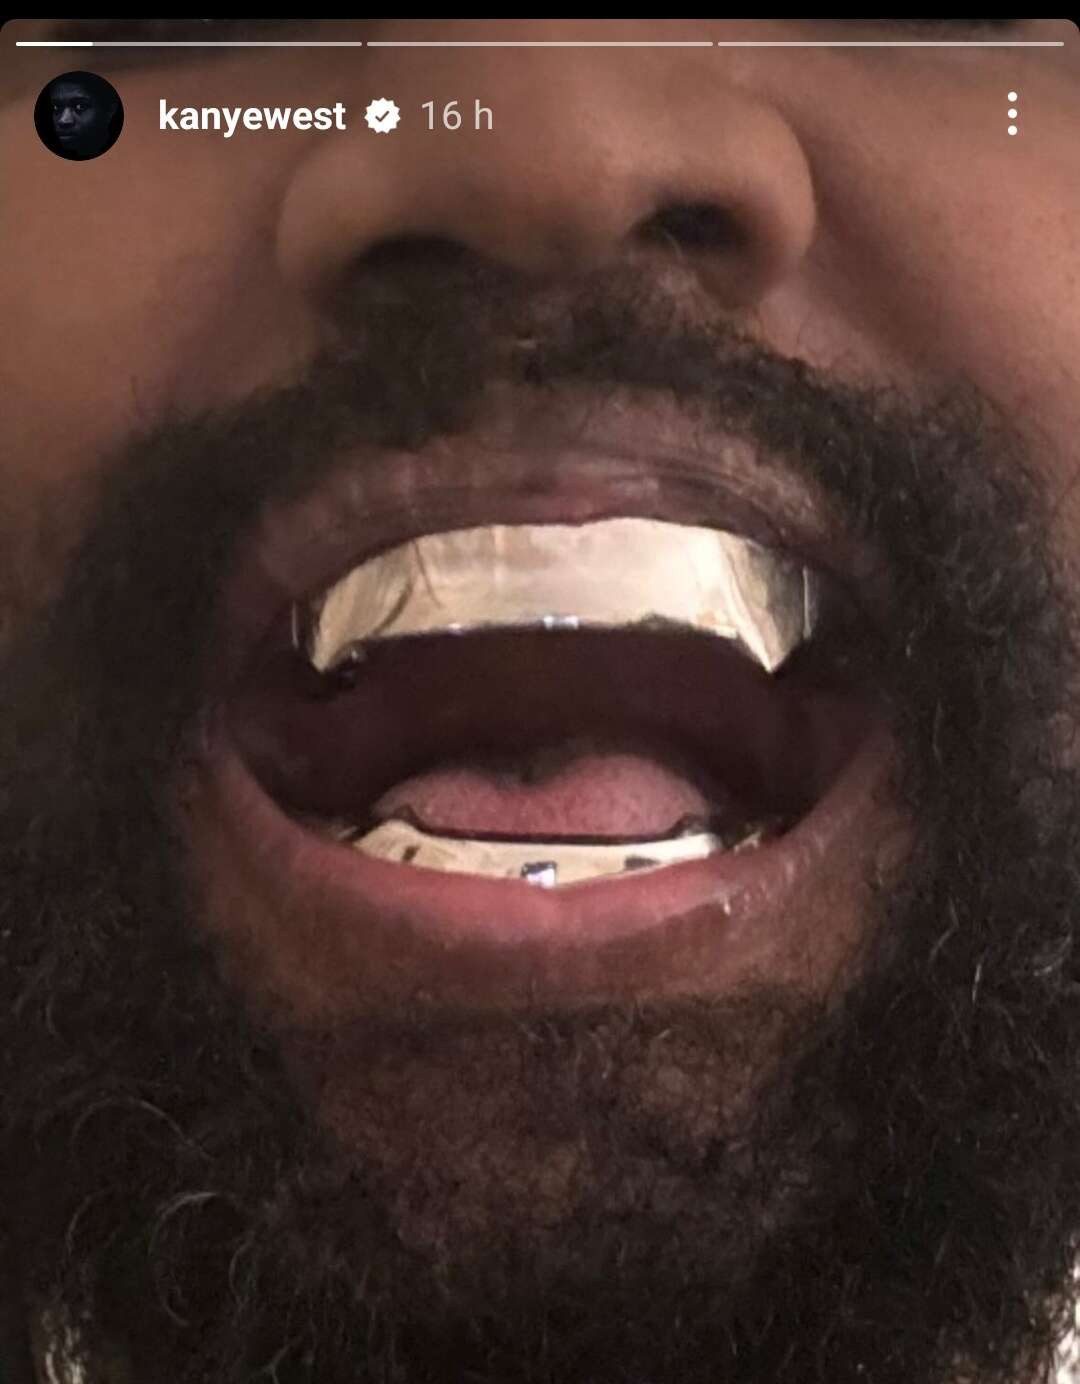 Kanye West a ajouté à ses dents une prothèse en titane.